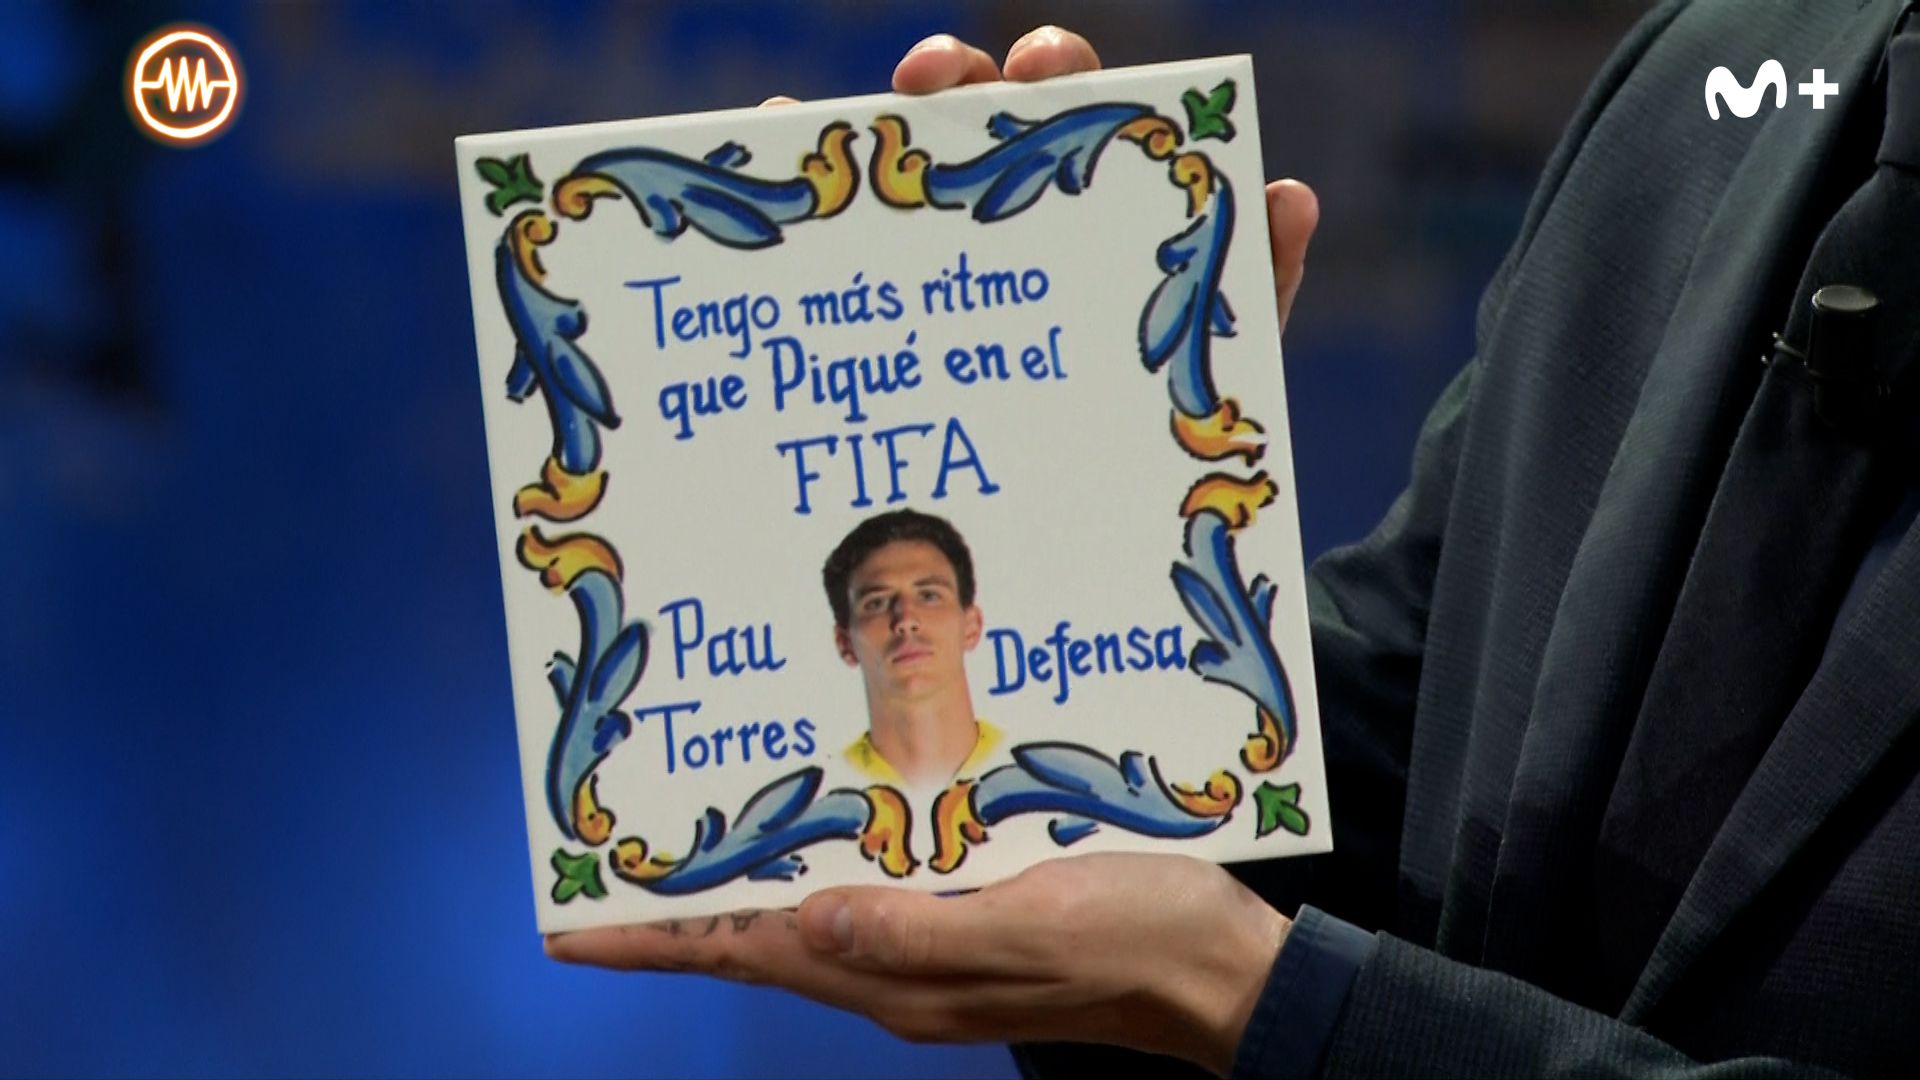 Pau Torres vacila a Piqué por un audio de WhatsApp: "Tengo más ritmo que tú en el FIFA"